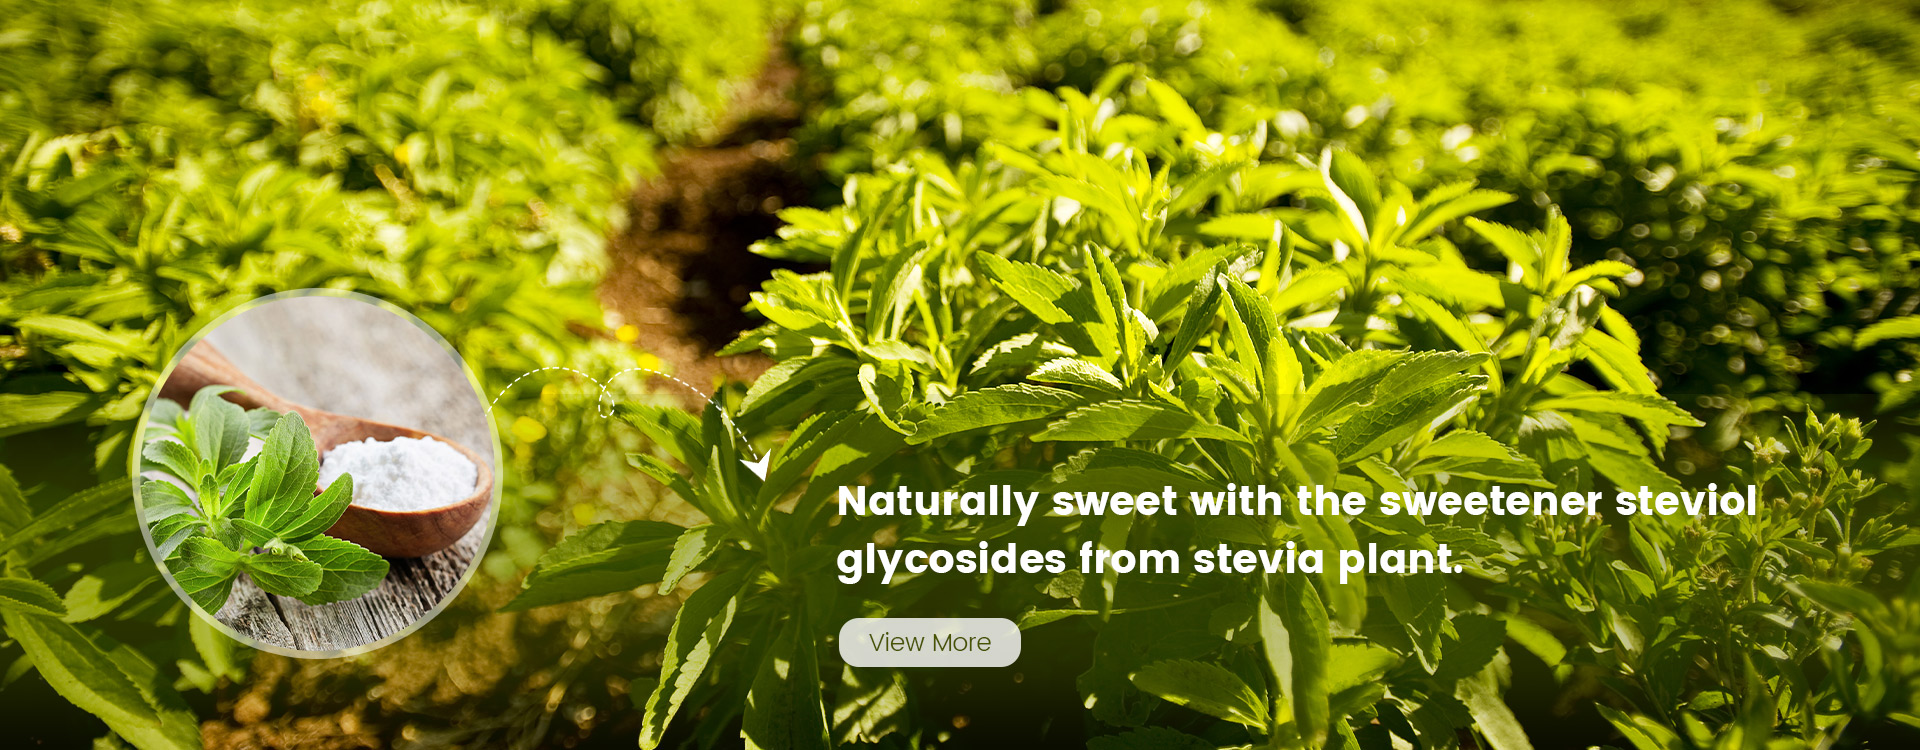 Beijing Stevia Co., Ltd.